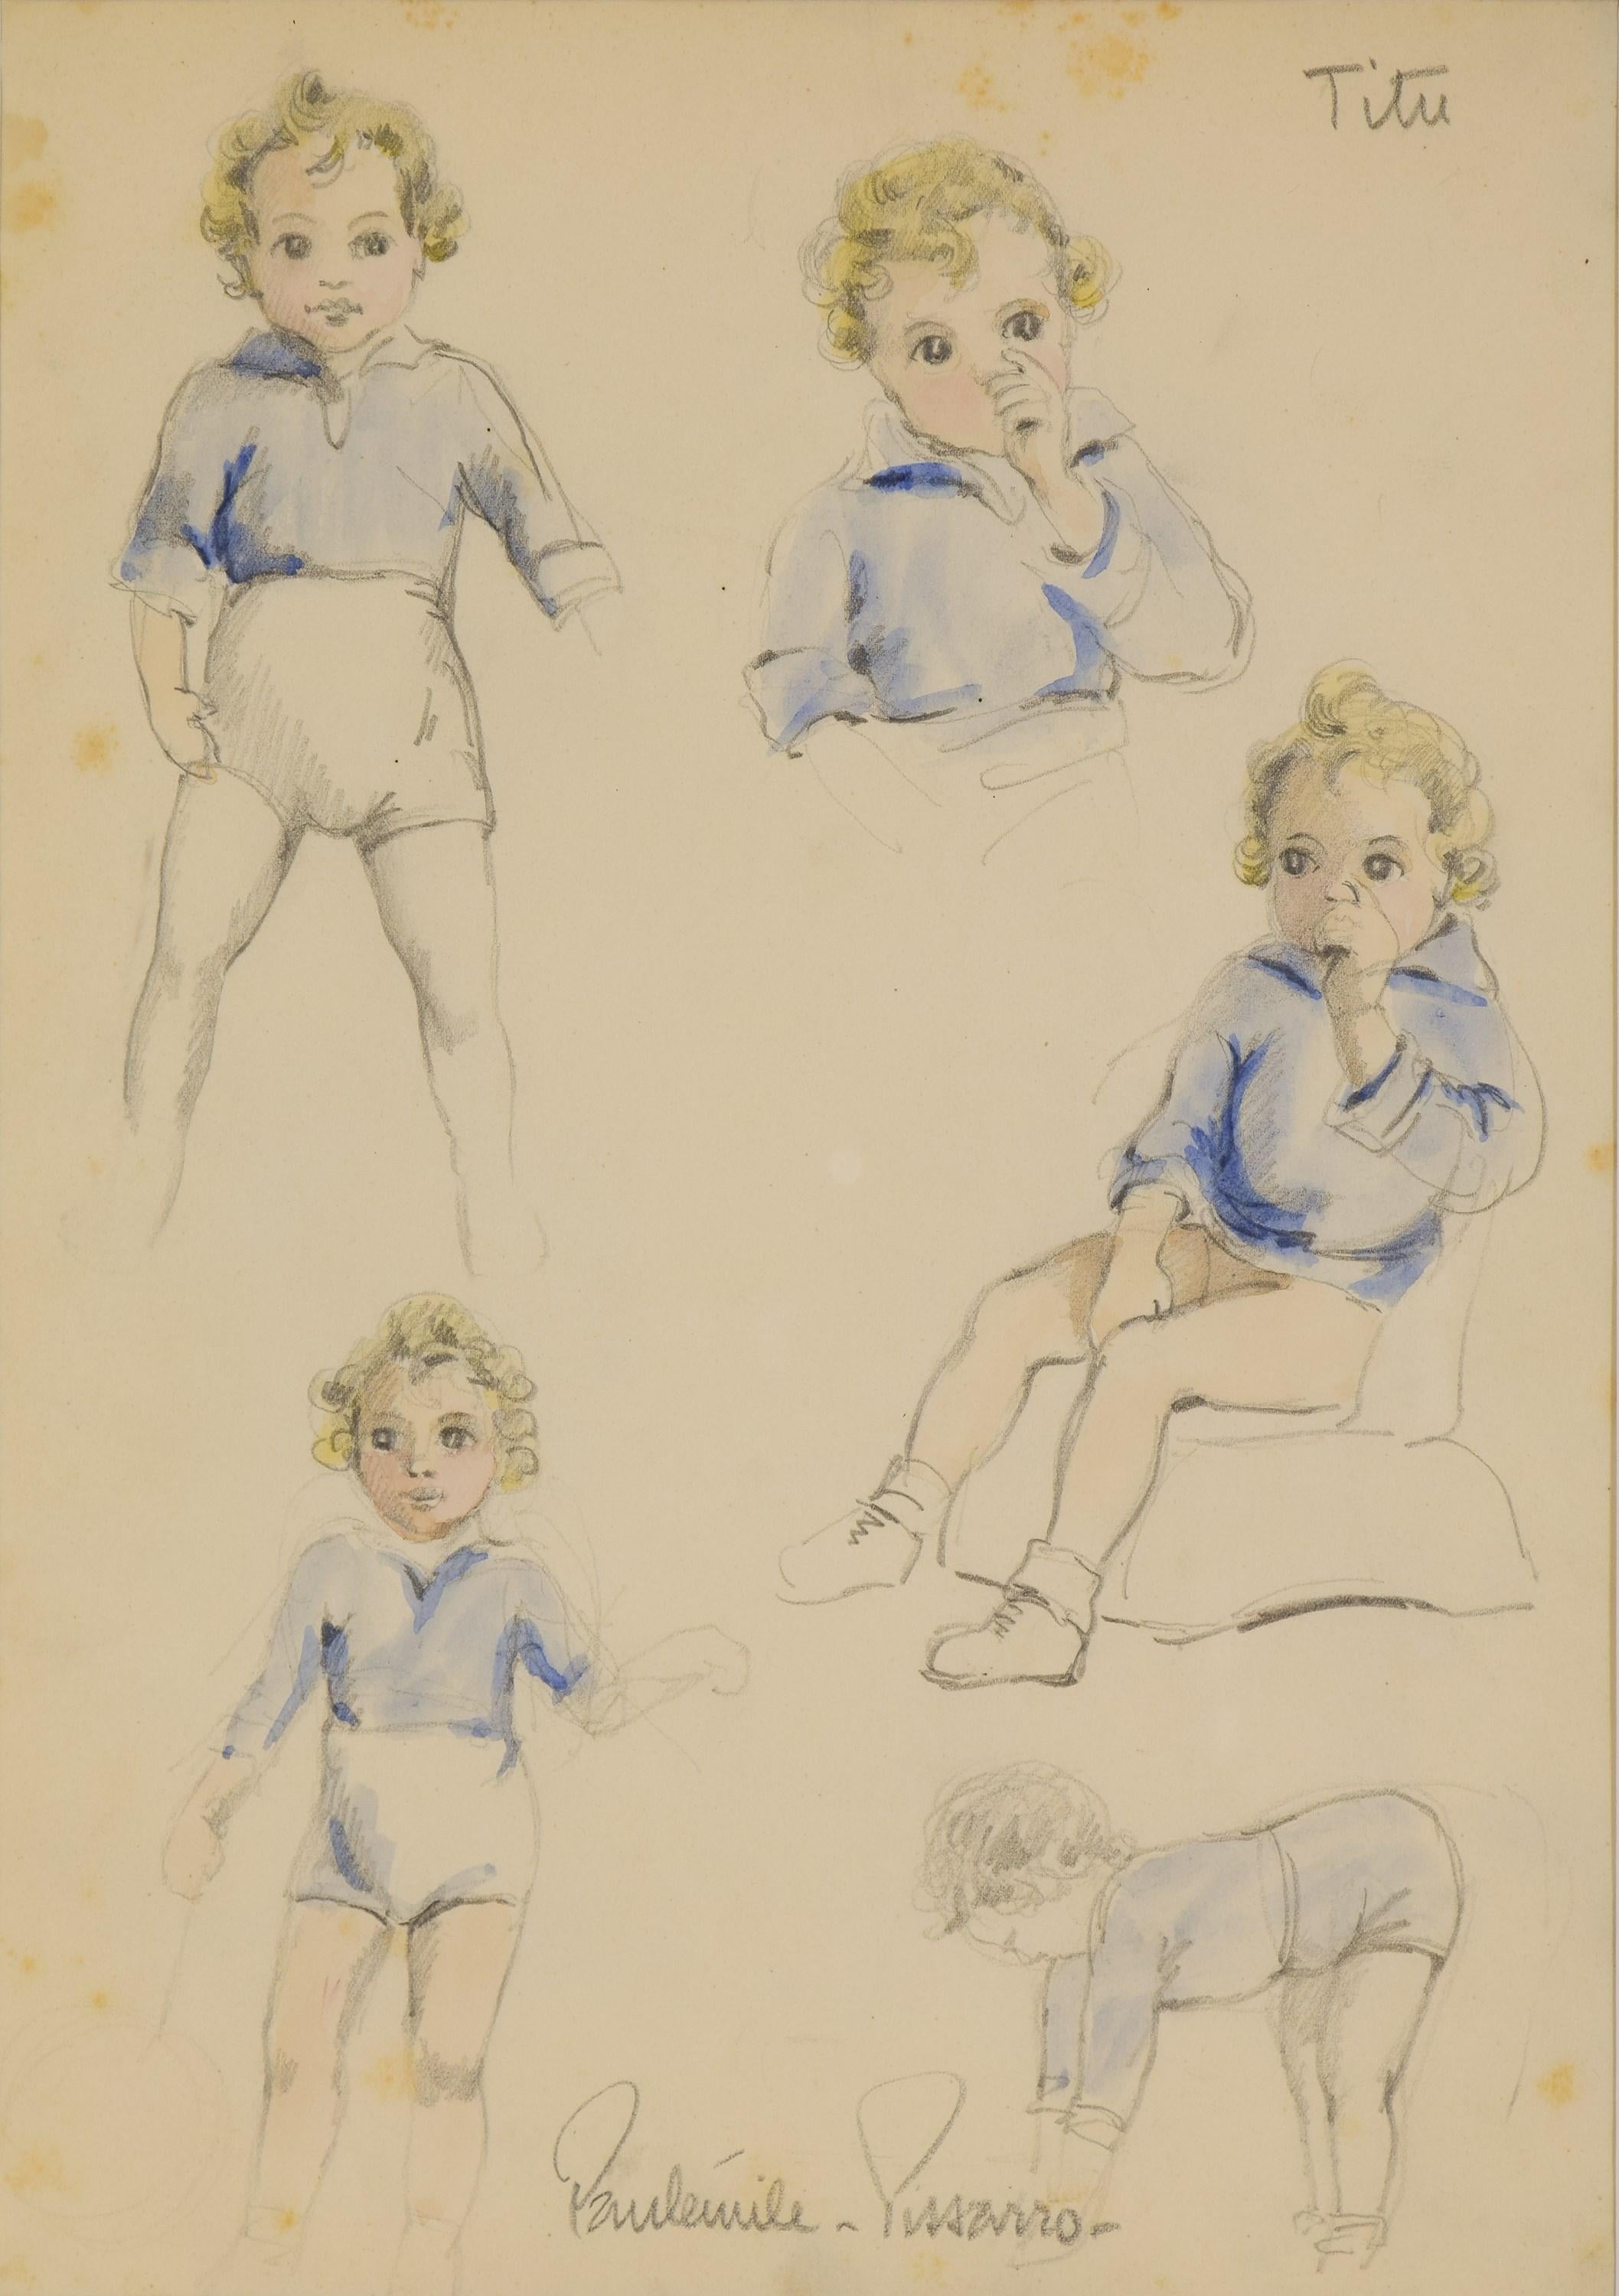 Études sur Titu by Paulémile Pissarro - Study drawing, 1938